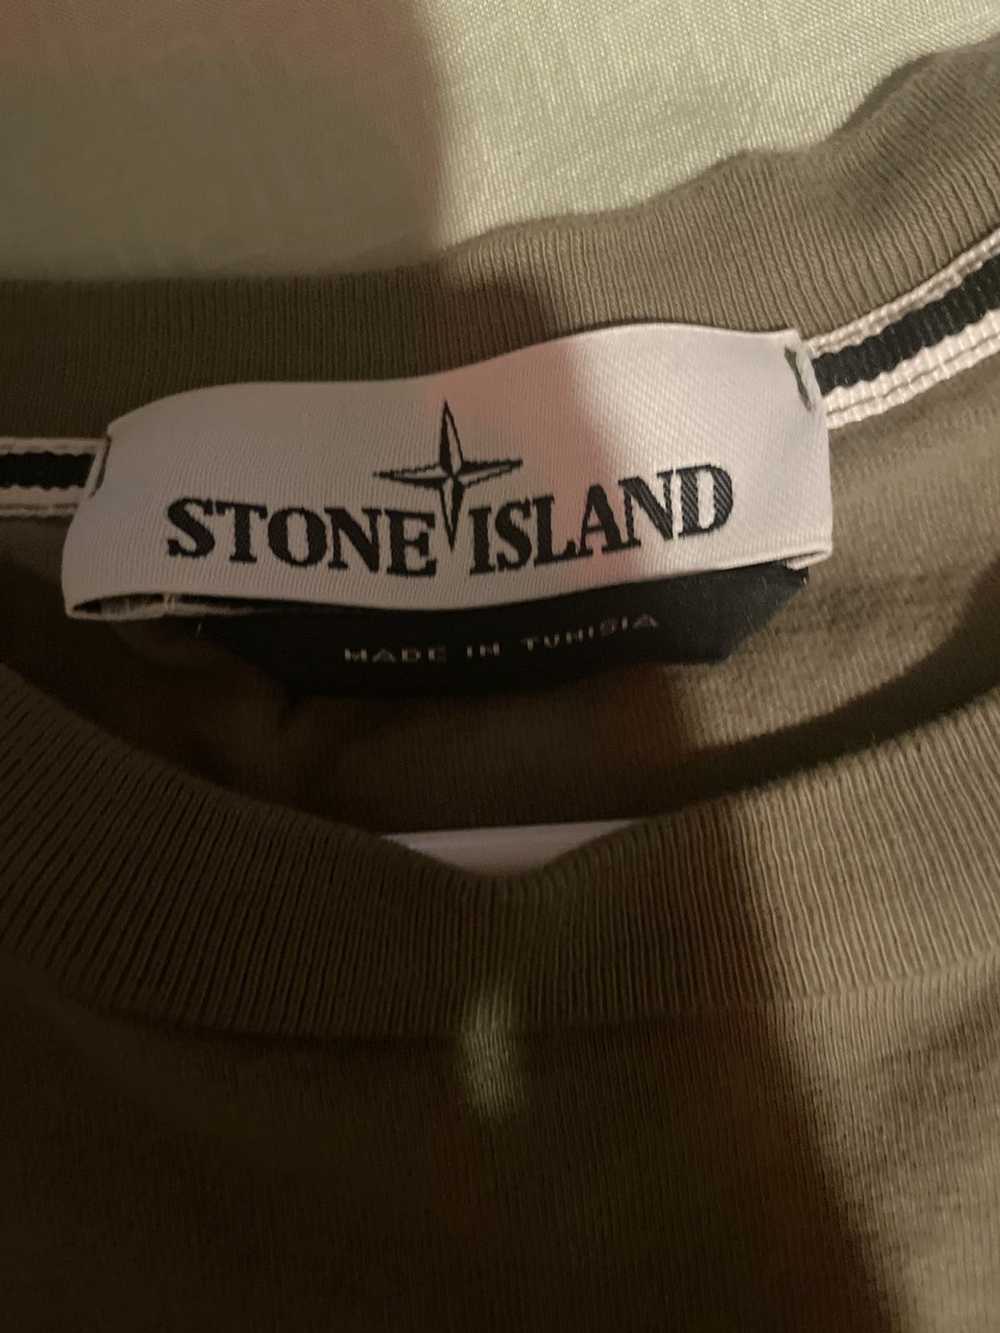 Stone Island Stone island - image 4